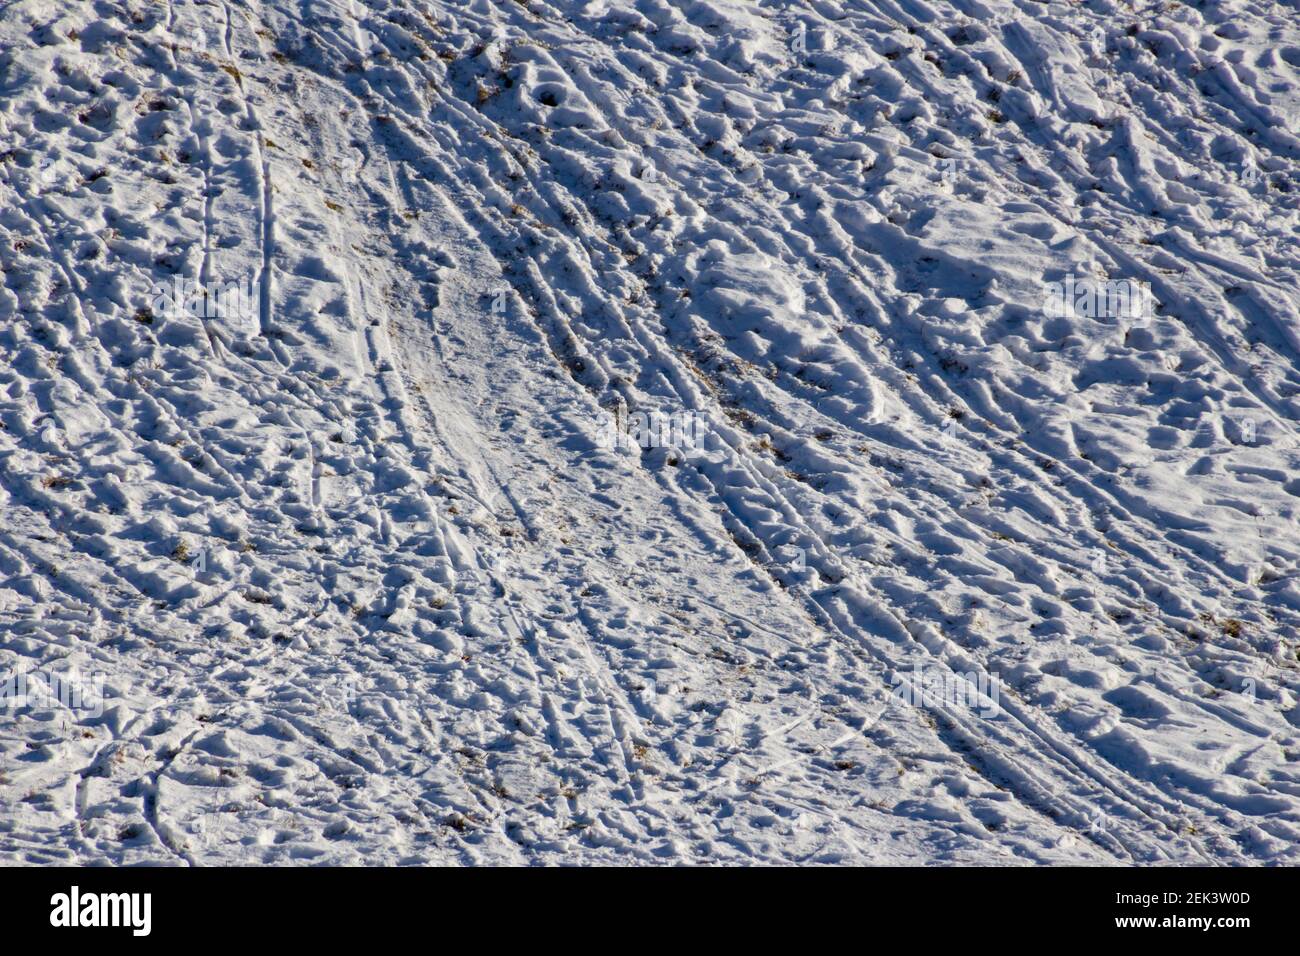 Viele Fußspuren, Ski- und Rodelbahnen auf einer Piste im Schnee Stockfoto